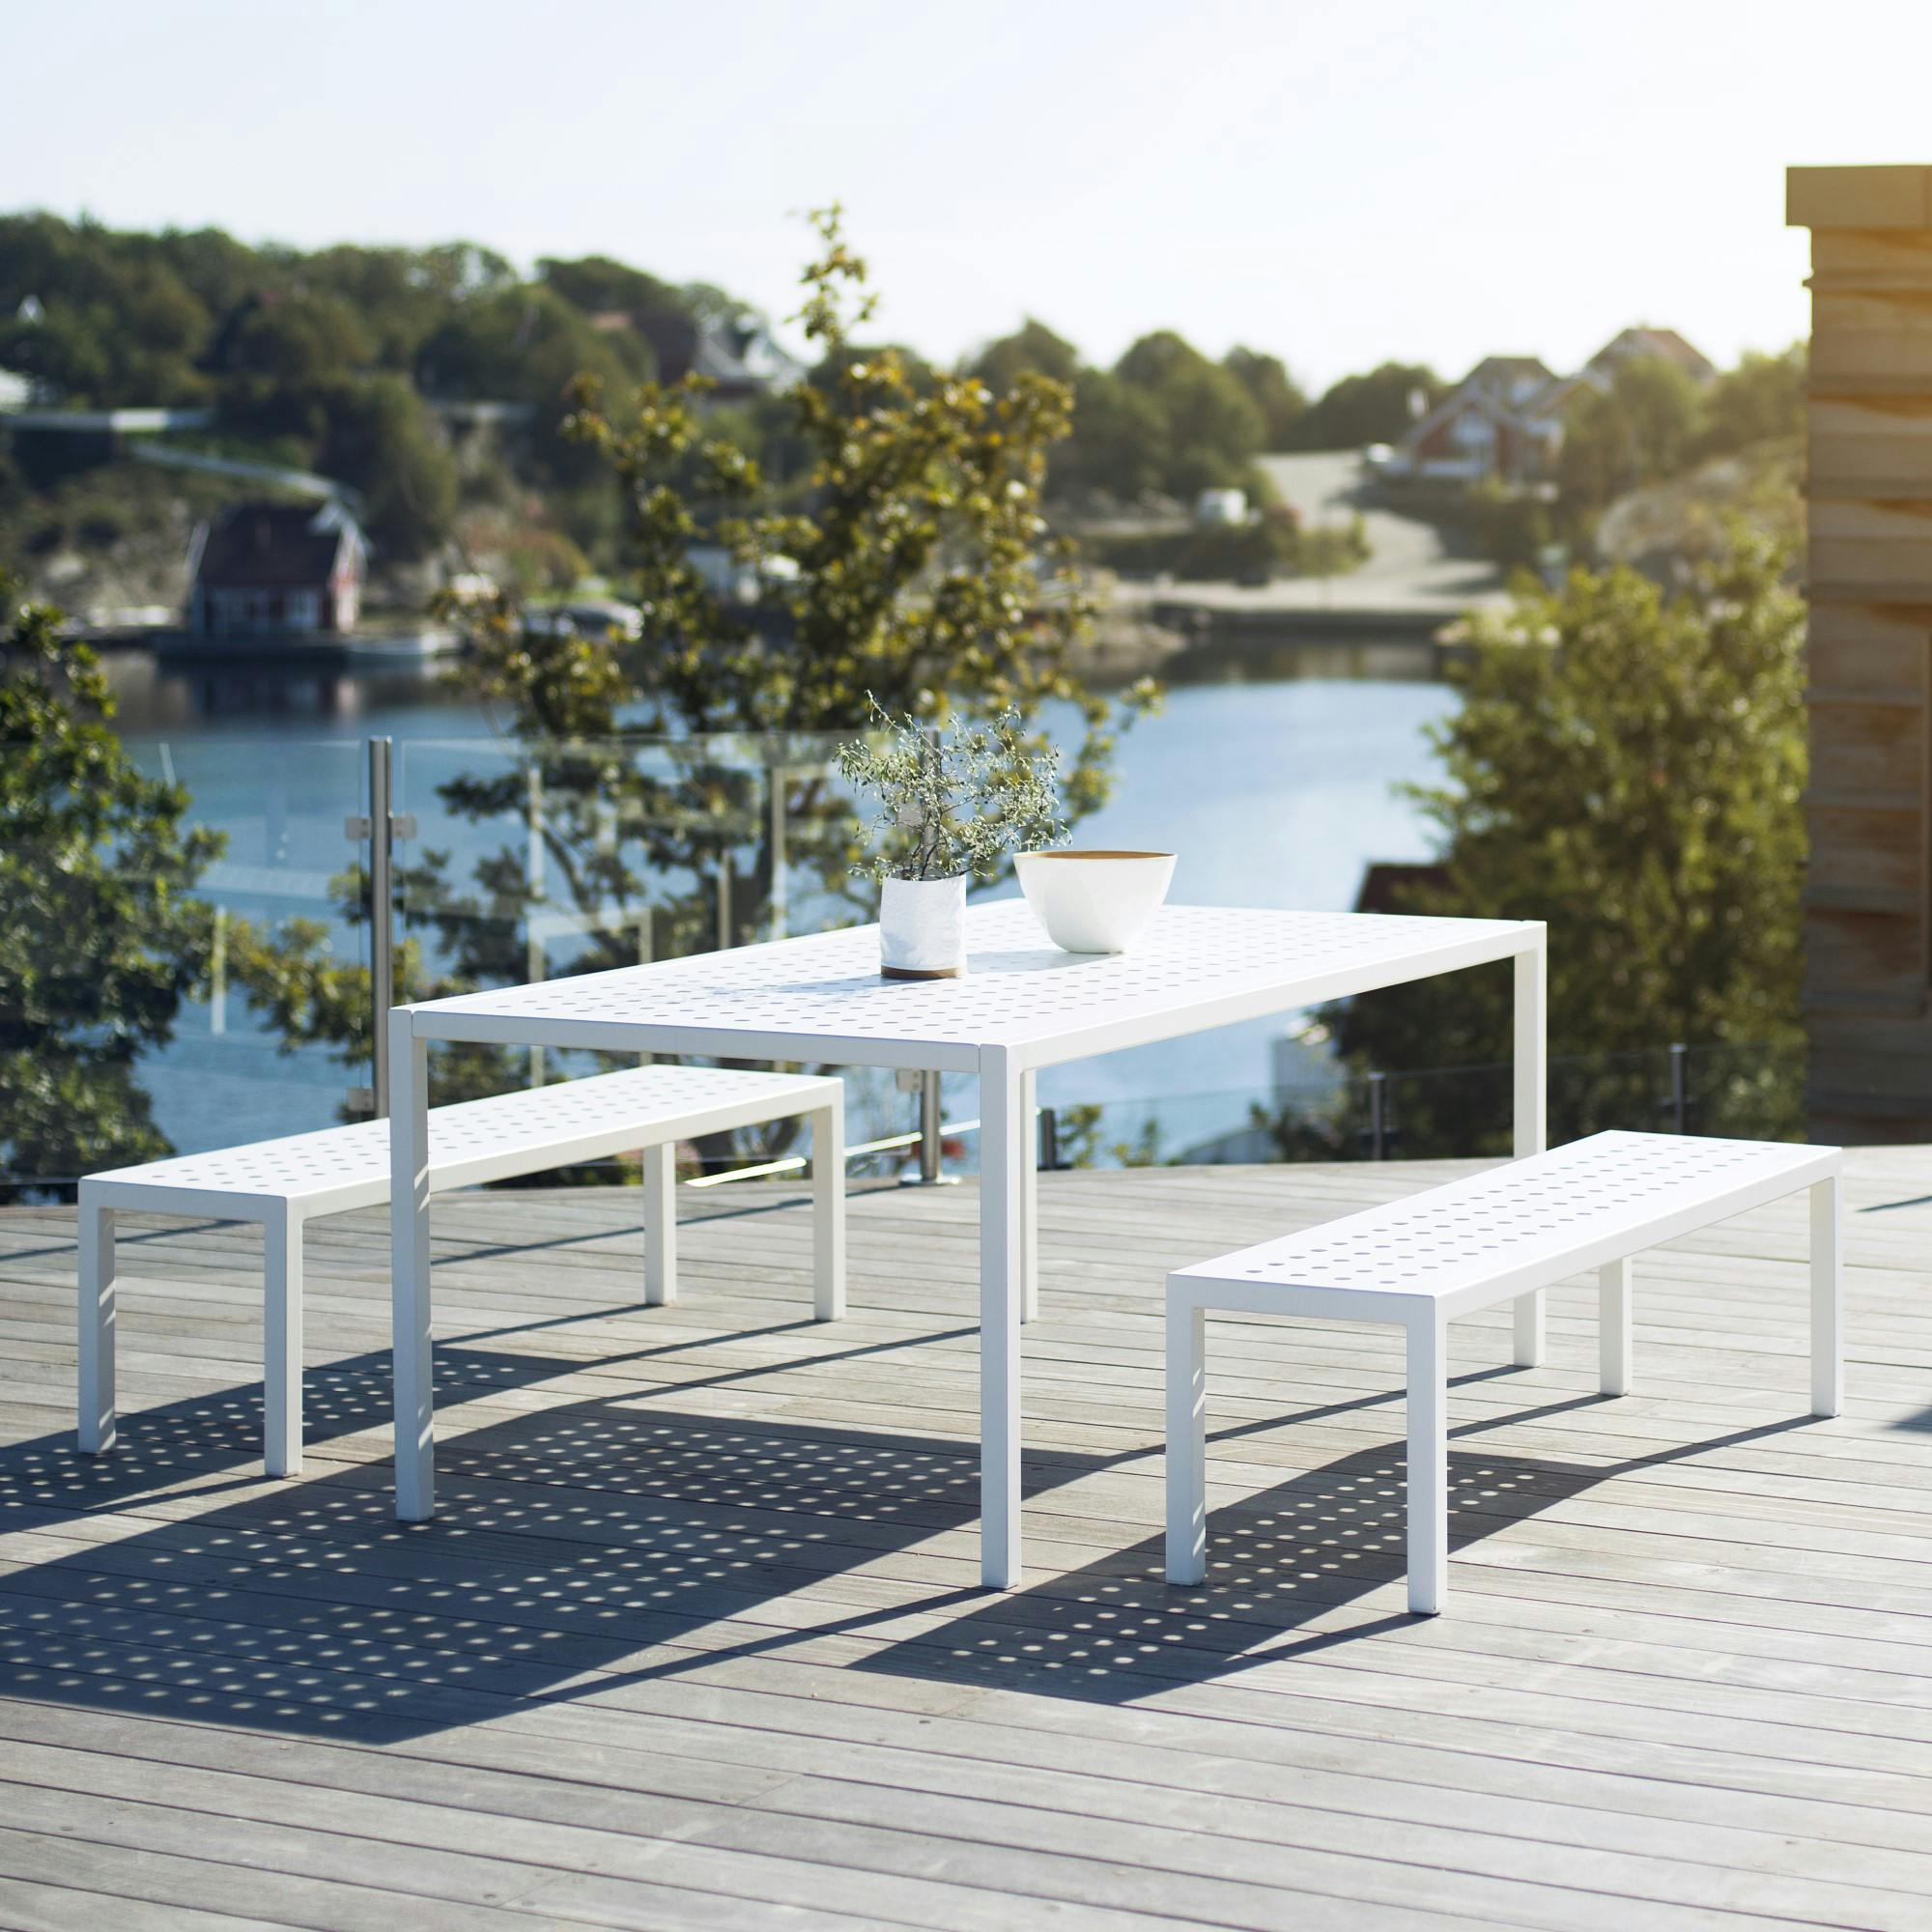 SUNDAYS フレーム ダイニングテーブル L ホワイト ガーデンファニチャー 屋外用家具 北欧 SD301【別送品】